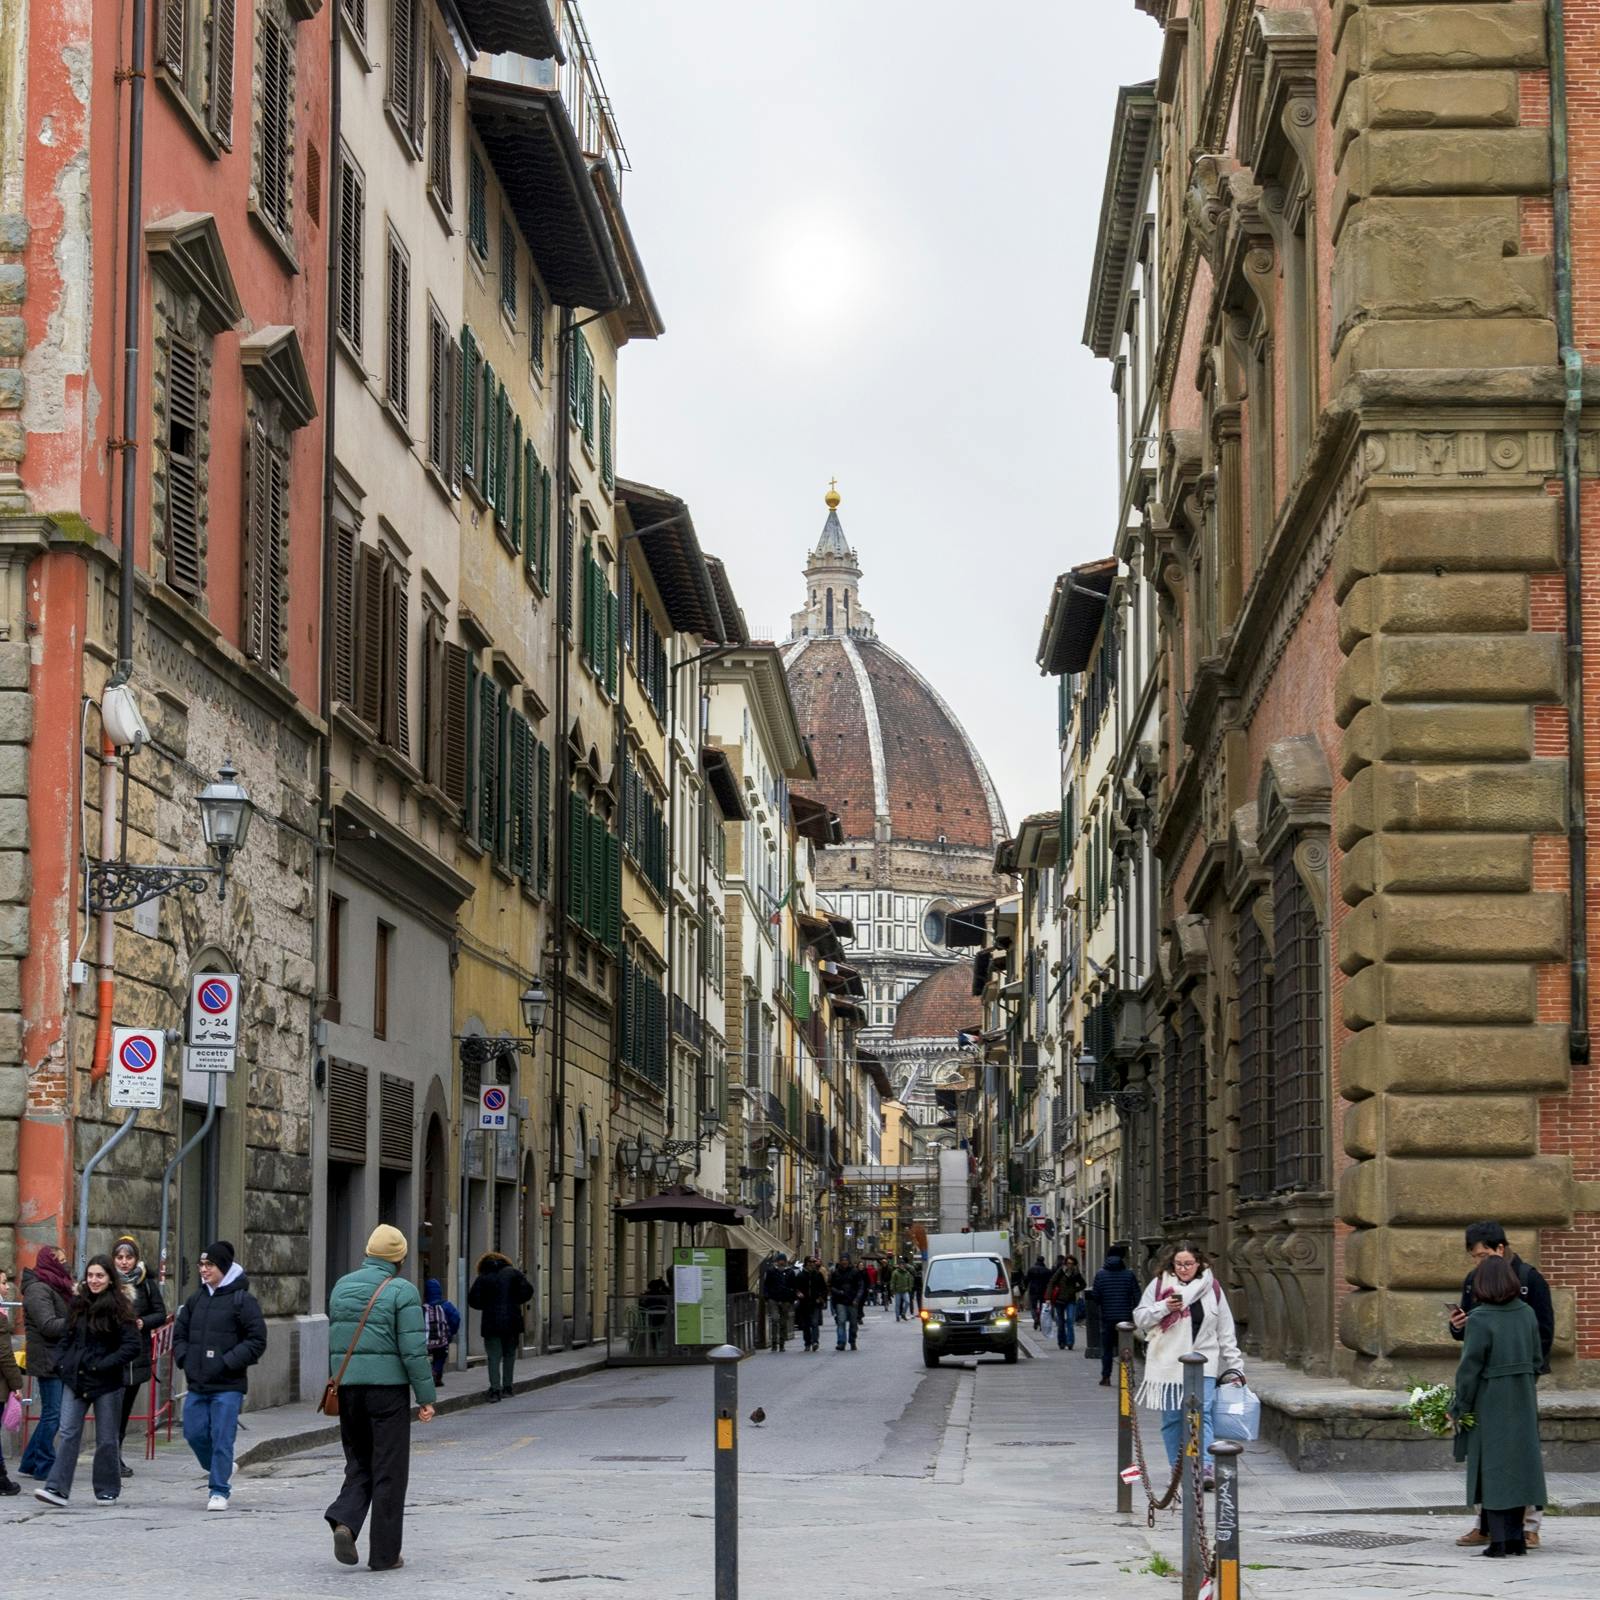 Aspectos destacados y gemas ocultas de la caminata interactiva de descubrimiento de Florencia